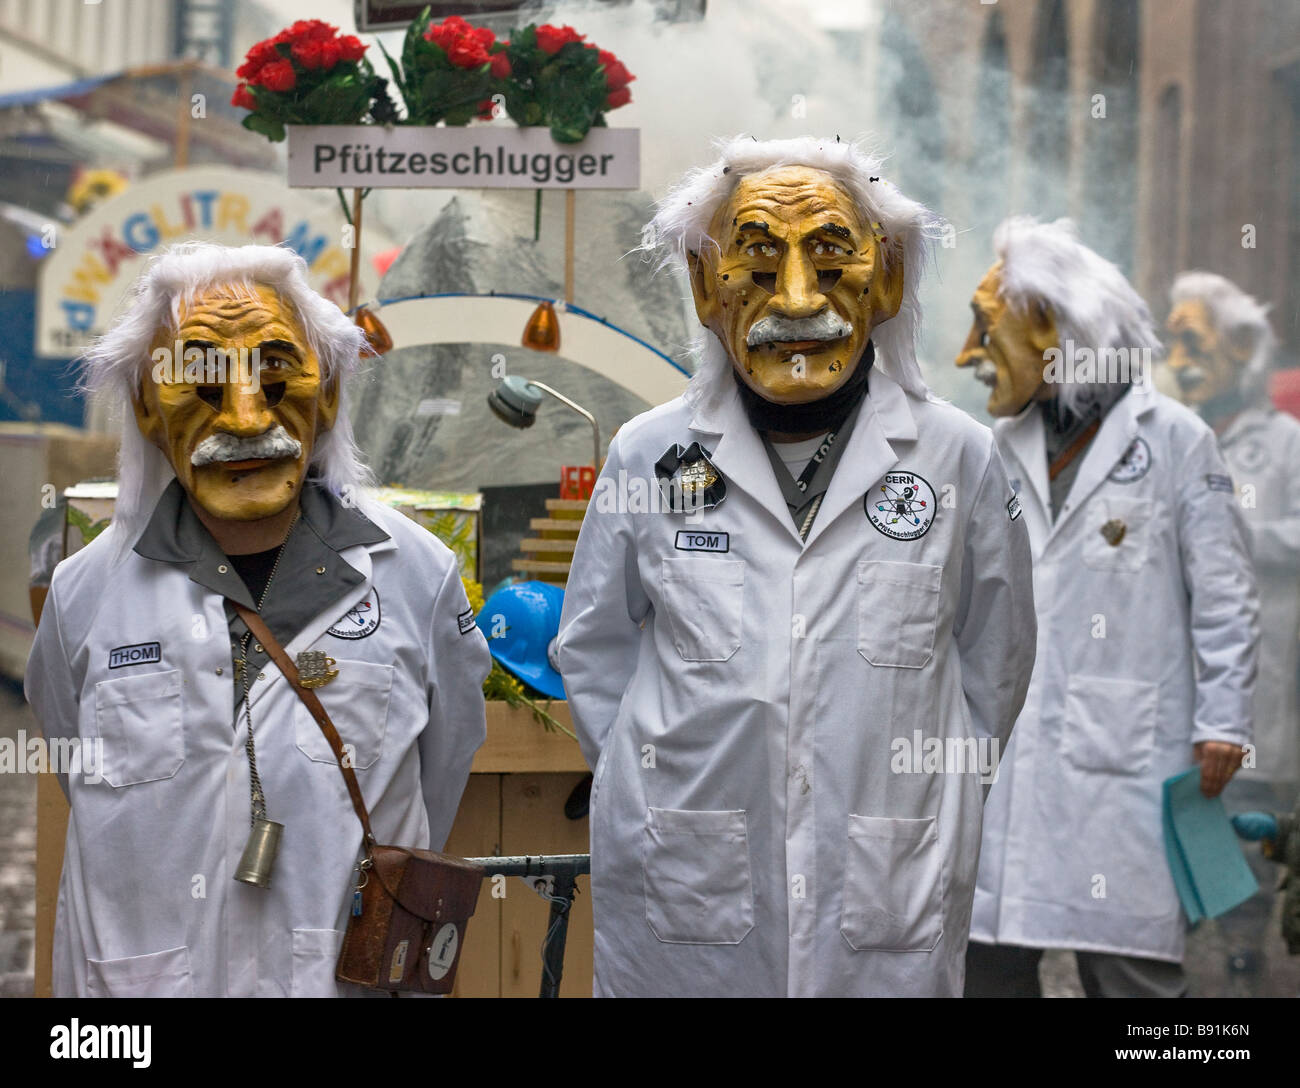 Habillés comme des marcheurs Einsteins de la Fasnacht, un carnaval d'hiver dans le nord-ouest de Bâle en Suisse Banque D'Images